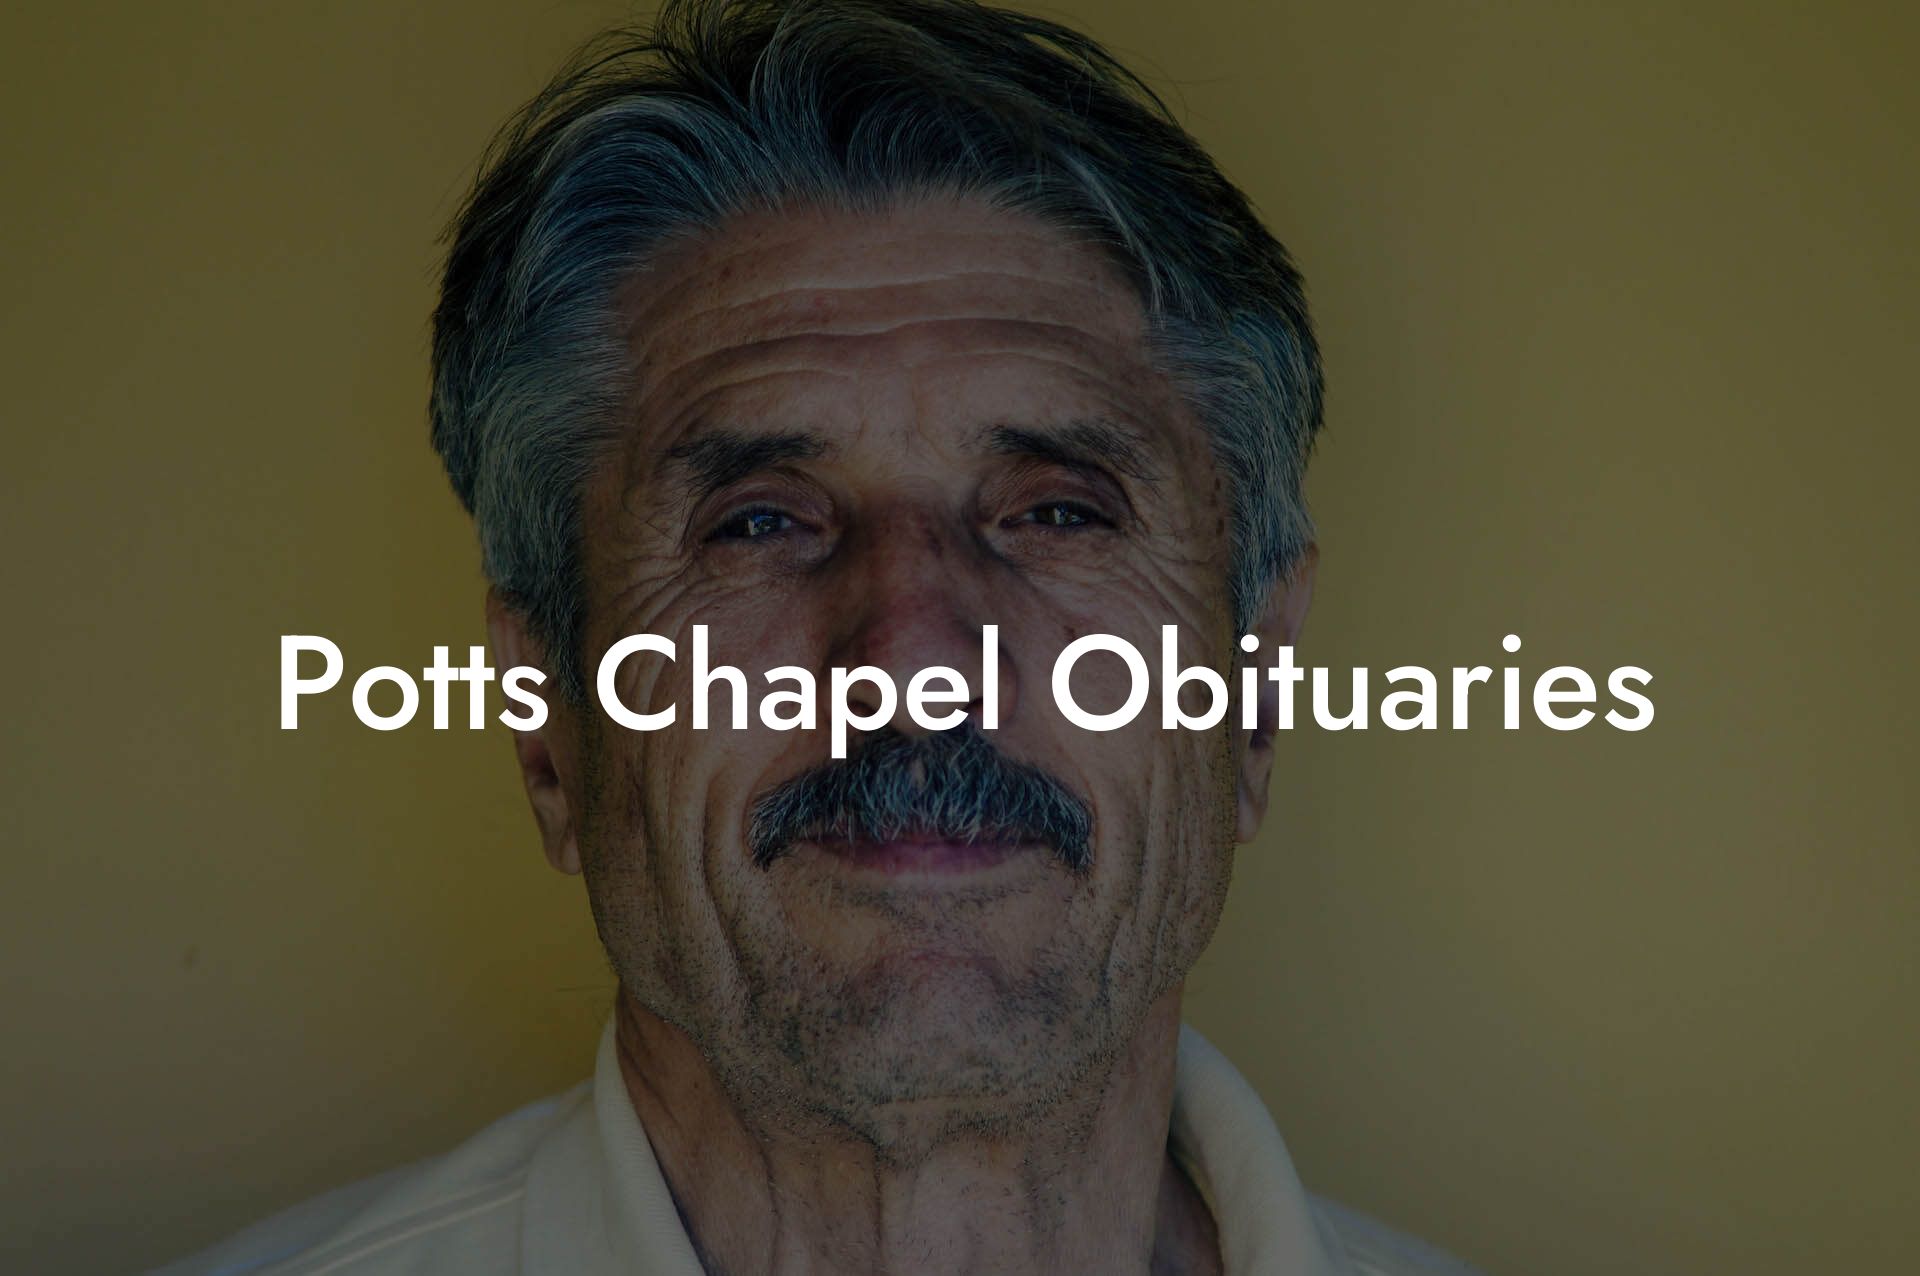 Potts Chapel Obituaries